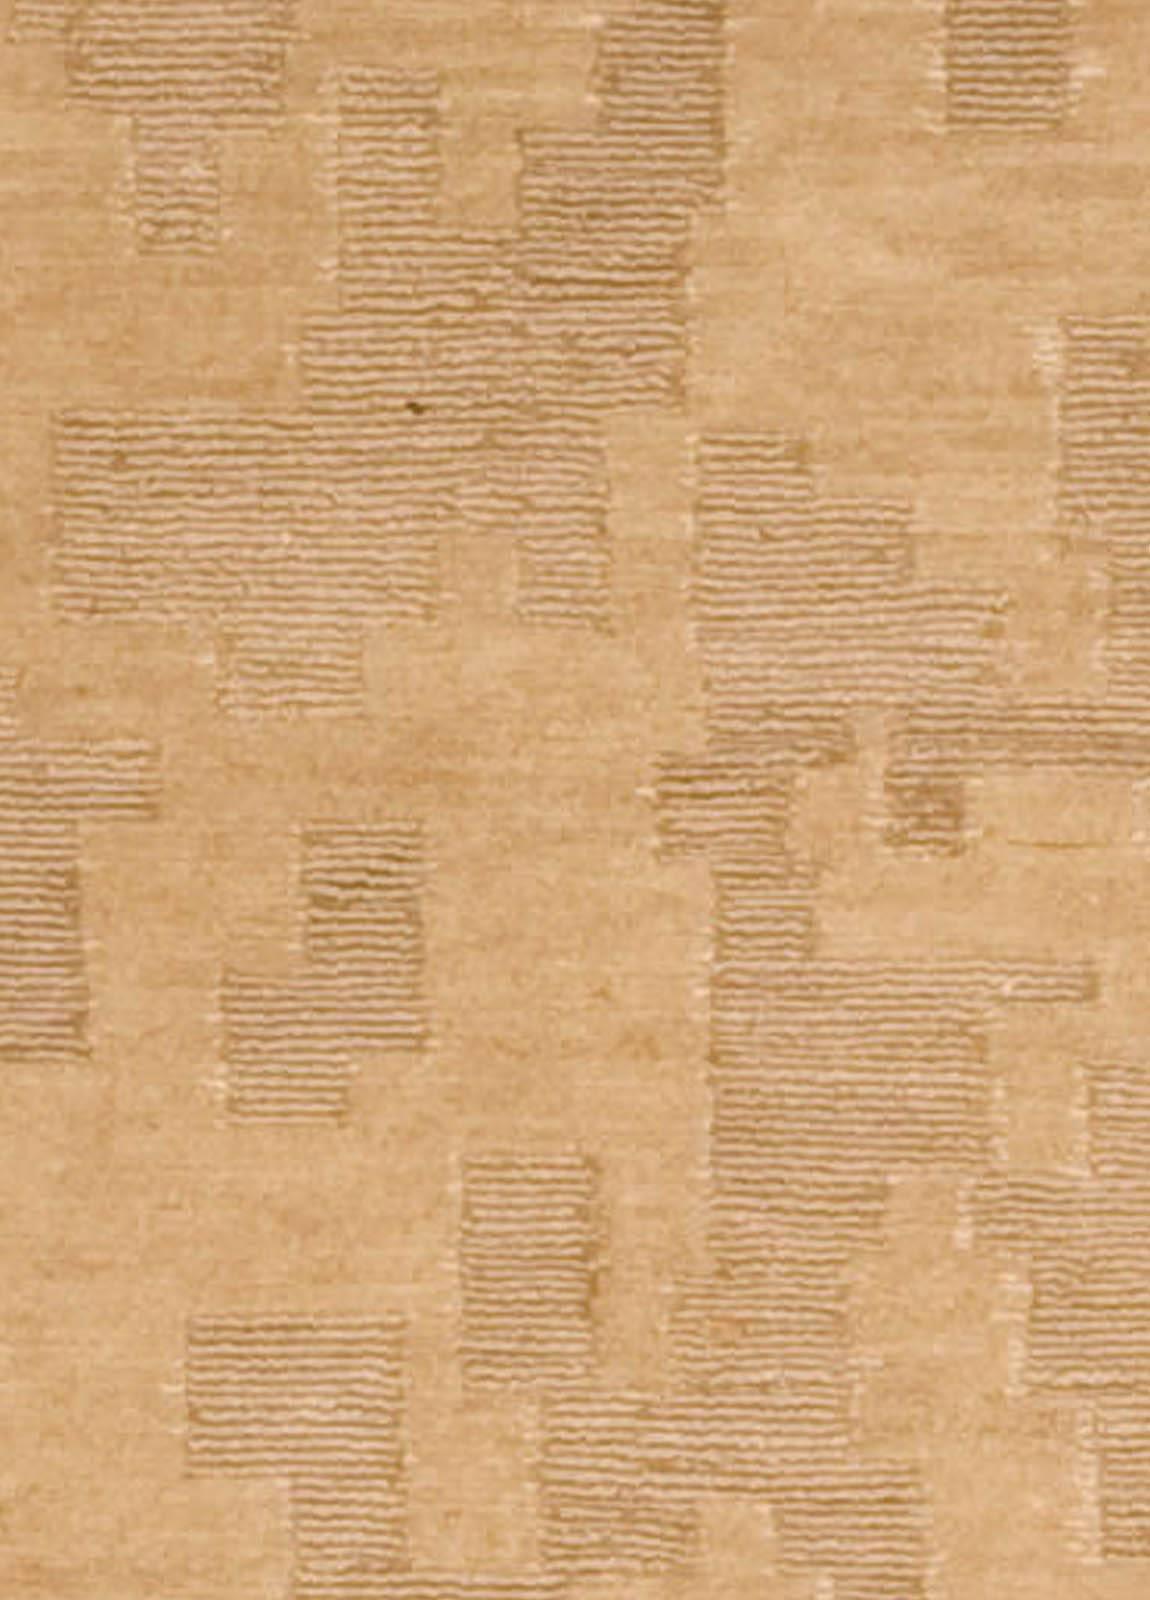 Doris Leslie Blau Collectional 'AD4' beige doré et marron tapis fait main par Arthur Dunnam
Taille : 121 × 182 cm (4'0